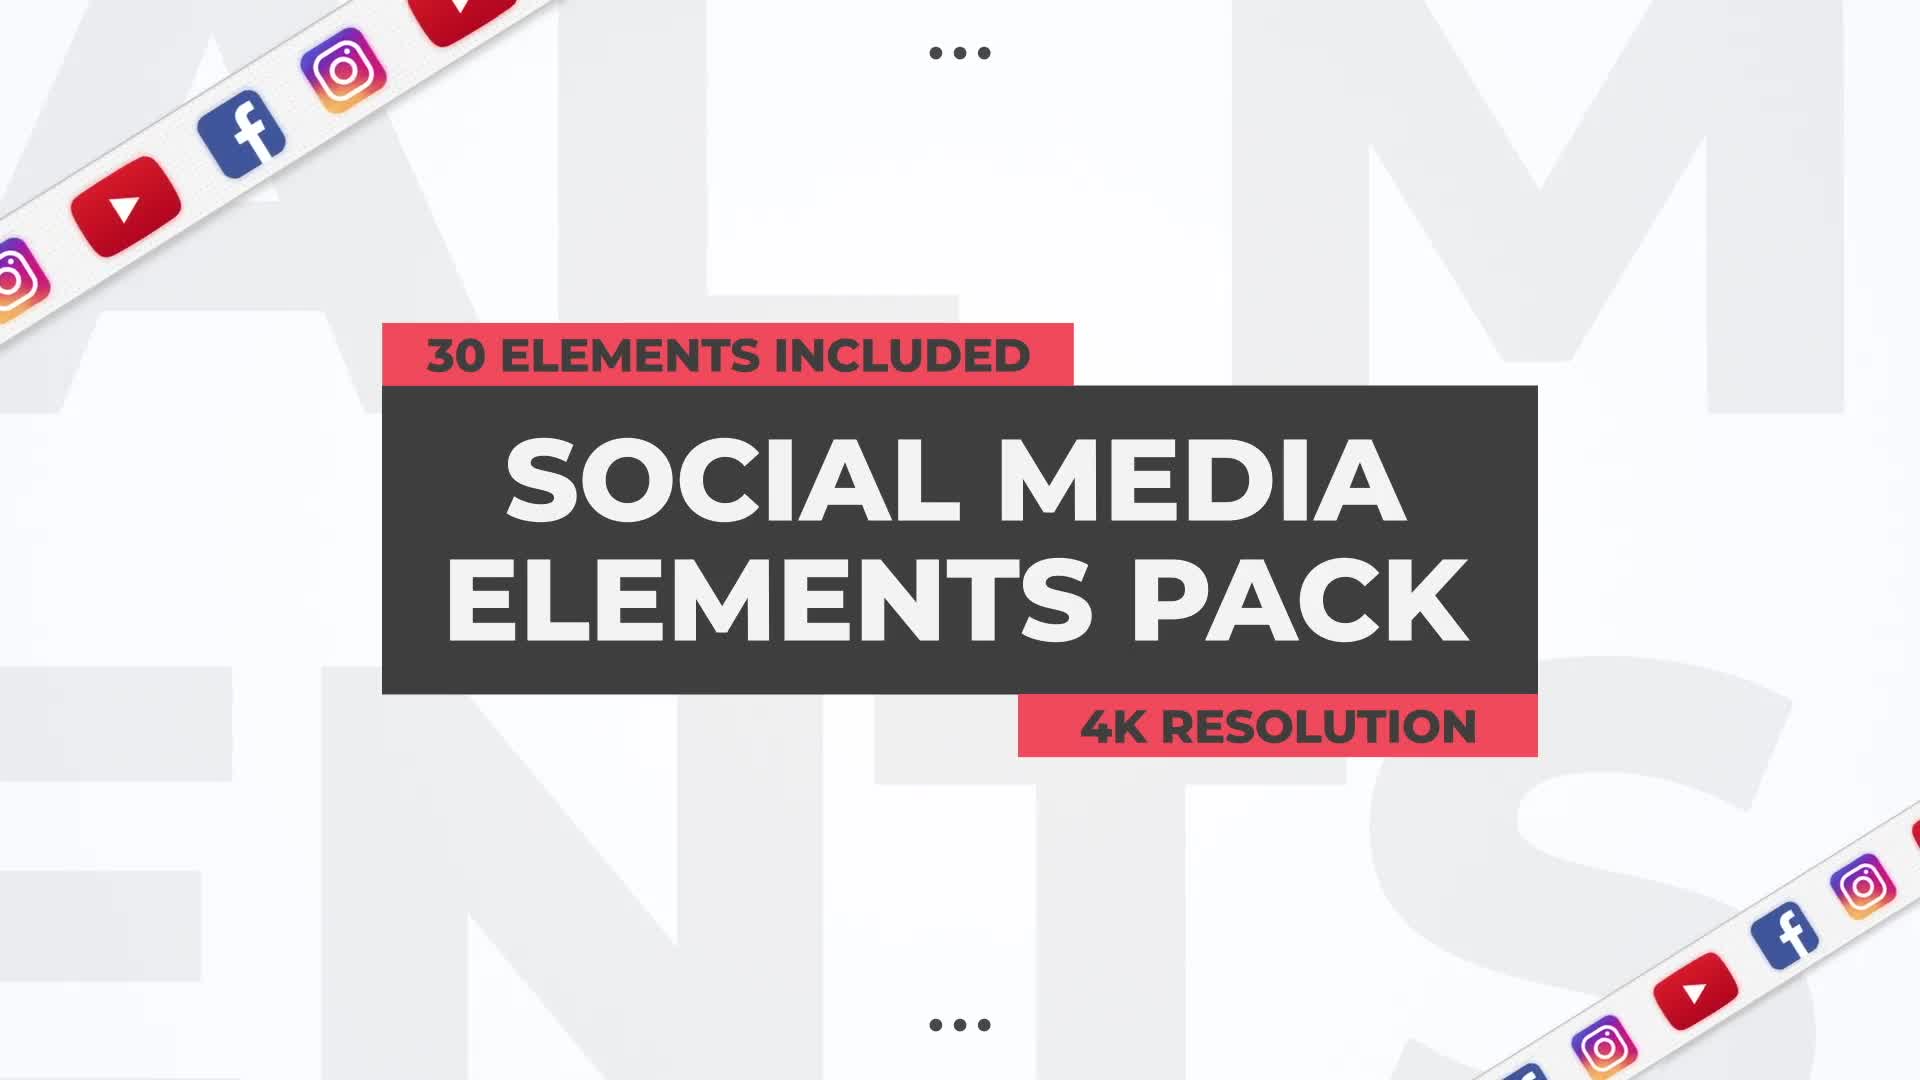 Social Media Elements Pack Premiere Pro Videohive 27008356 Premiere Pro Image 1